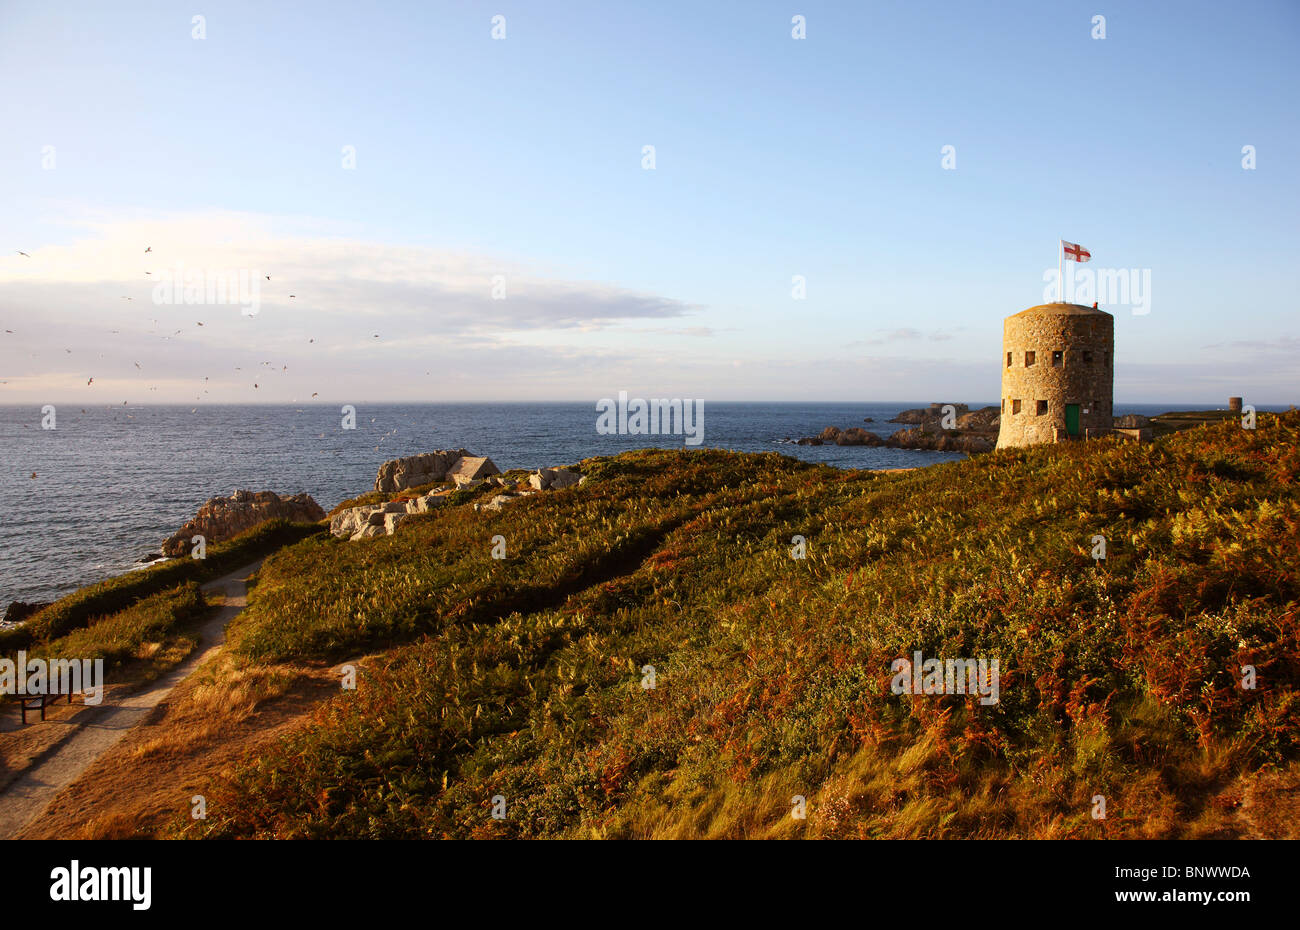 Torri di avvistamento, alla costa nord dell'isola di Guernsey, chiamato Martello torri. Guernsey, Isole del Canale, Regno Unito, Europa Foto Stock